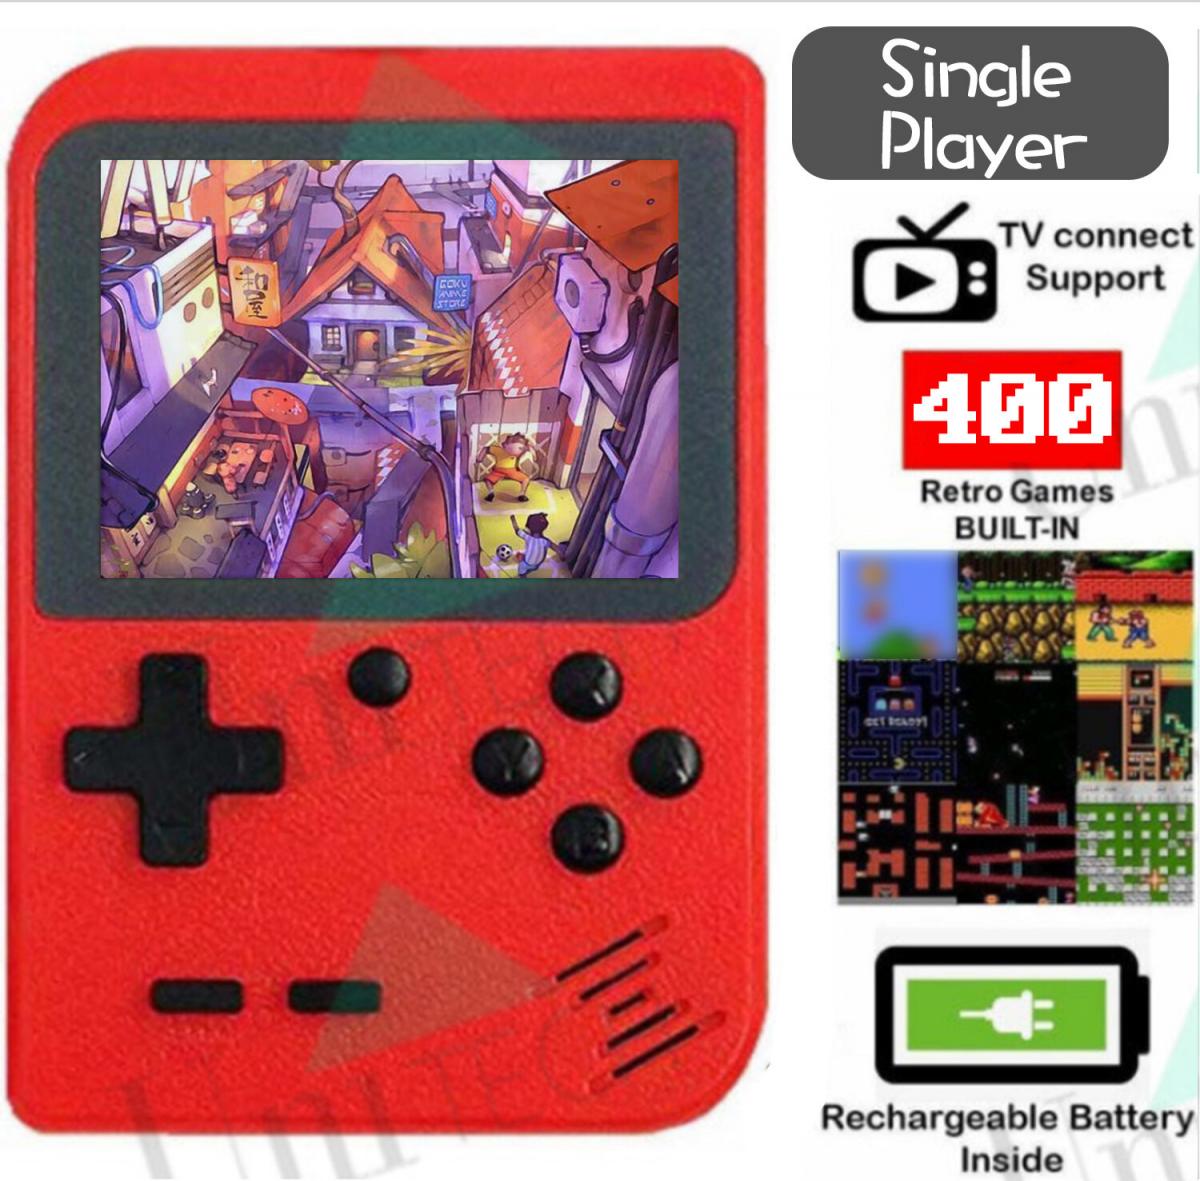 迷你手提式400合1 DC復古遊戲機 紅色 GAMEBOY (內置400個經典電子遊戲 3寸大屏幕 電視輸出支援 掌上輕巧易於攜帶)Single Player【圖片僅供參考】